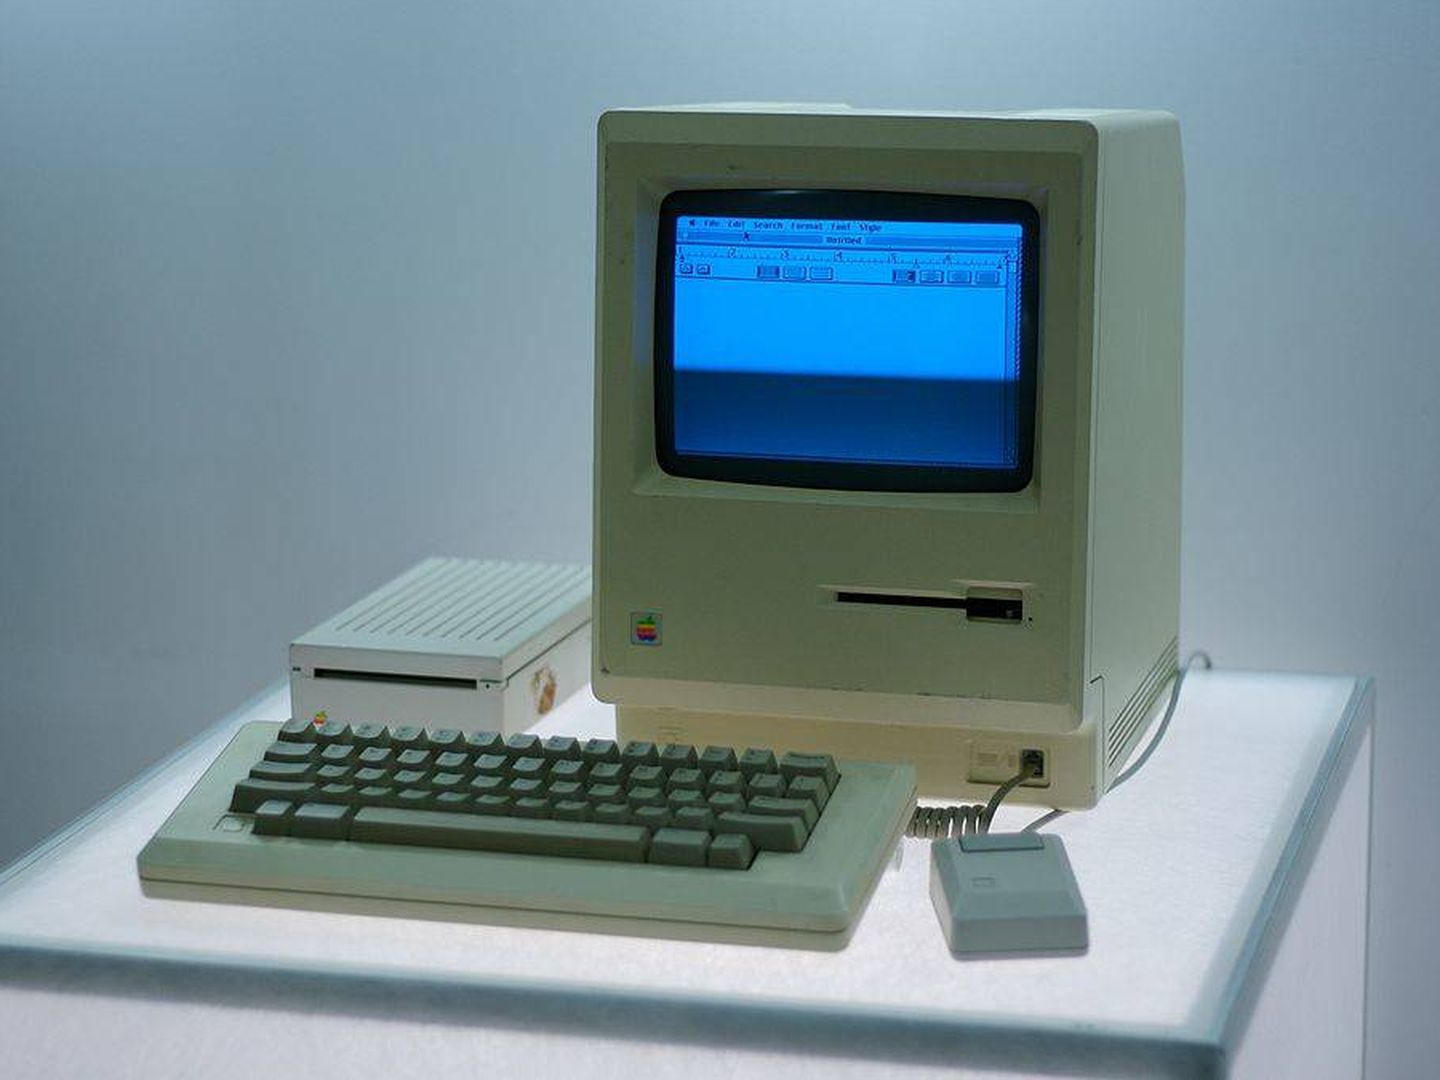 La interfaz gráfica y el ratón eran dos de los atractivos del pequeño Macintosh. (Wikimedia Commons)